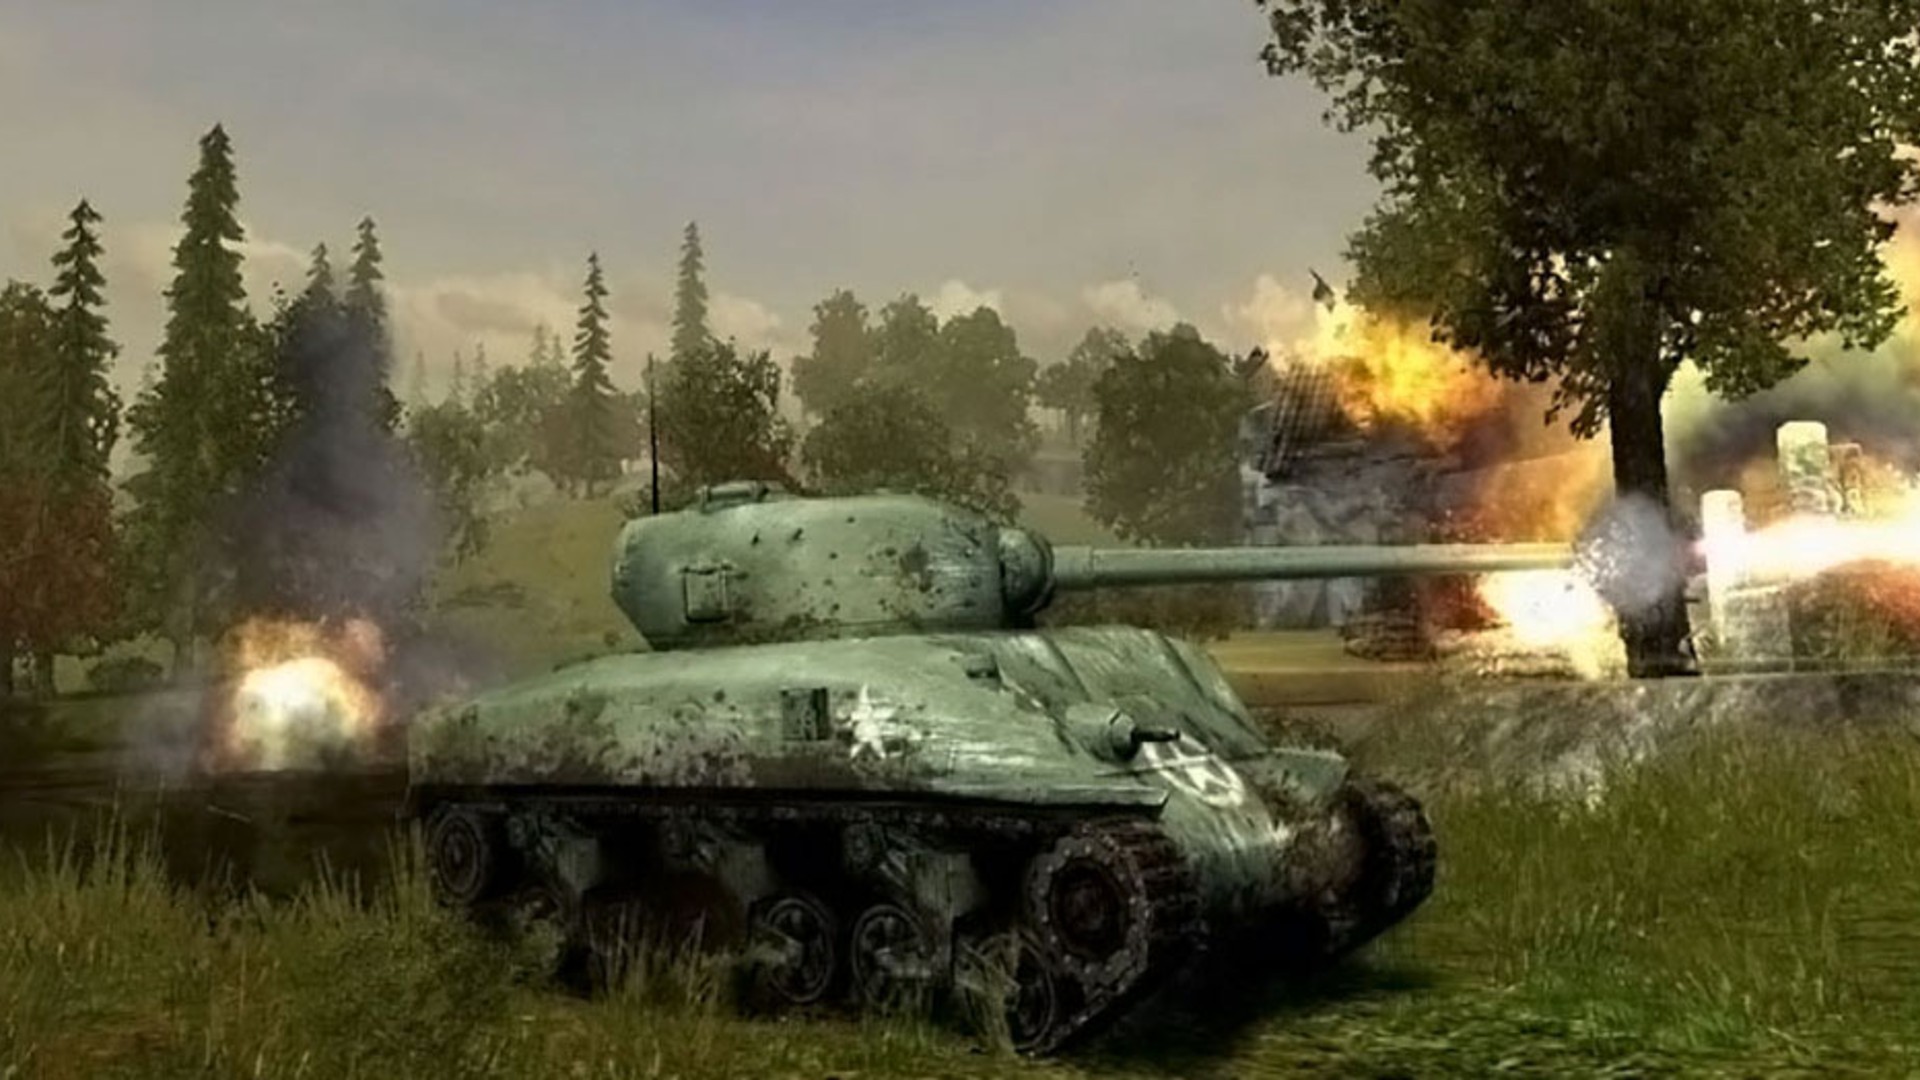 Най -добрите танкови игри: Panzer Elite Action. Изображението показва резервоар в действие в провинцията